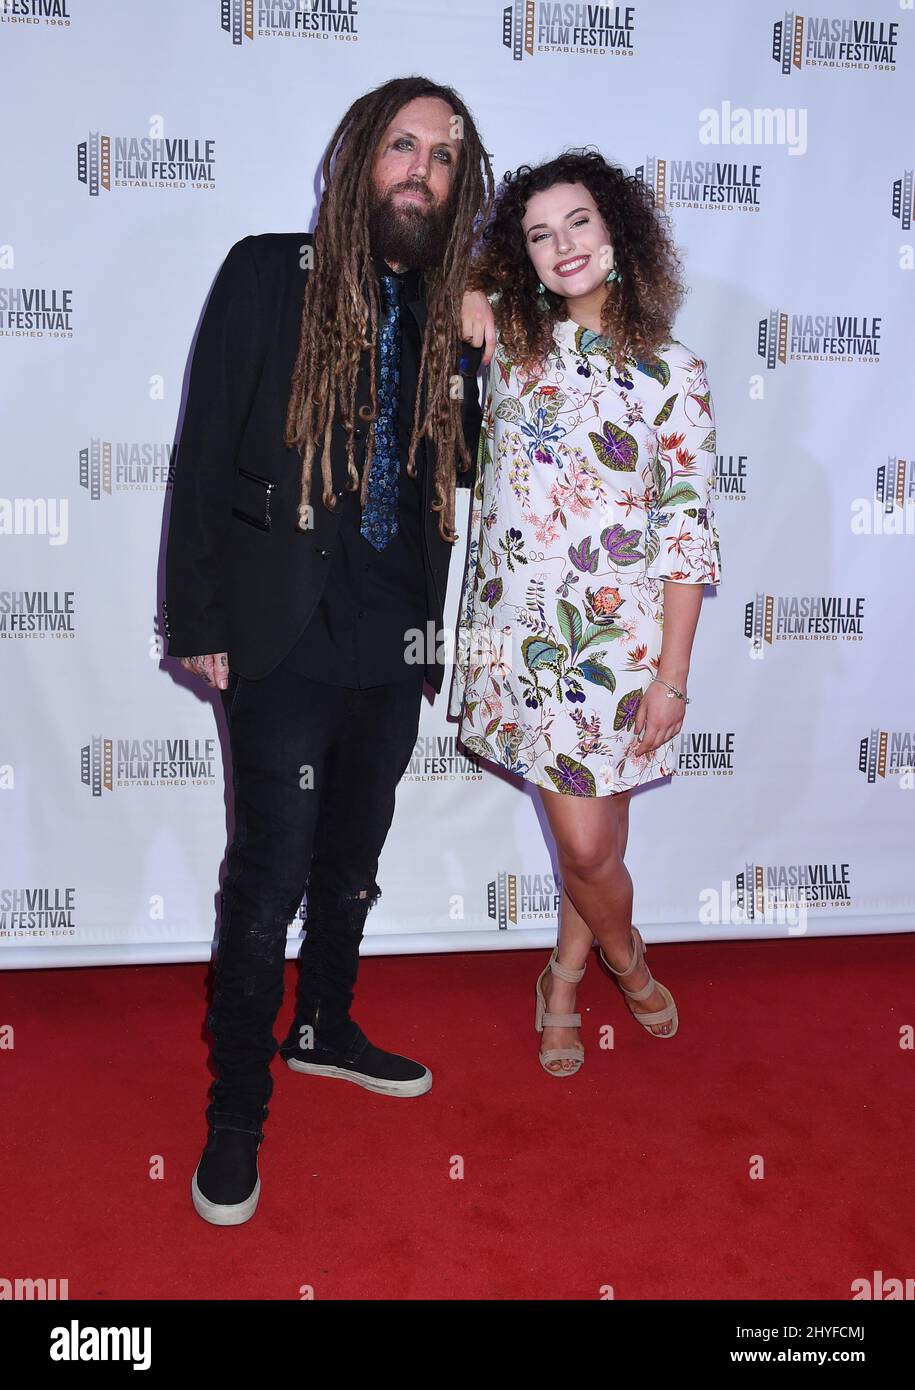 Brian Welch e Jennea Welch della band Korn partecipano alla proiezione di 'Loud Krazy Love' durante il Nashville Film Festival tenuto al Regal 27 Hollywood Theatre il 11 maggio 2018 a Nashville, Tennessee Foto Stock